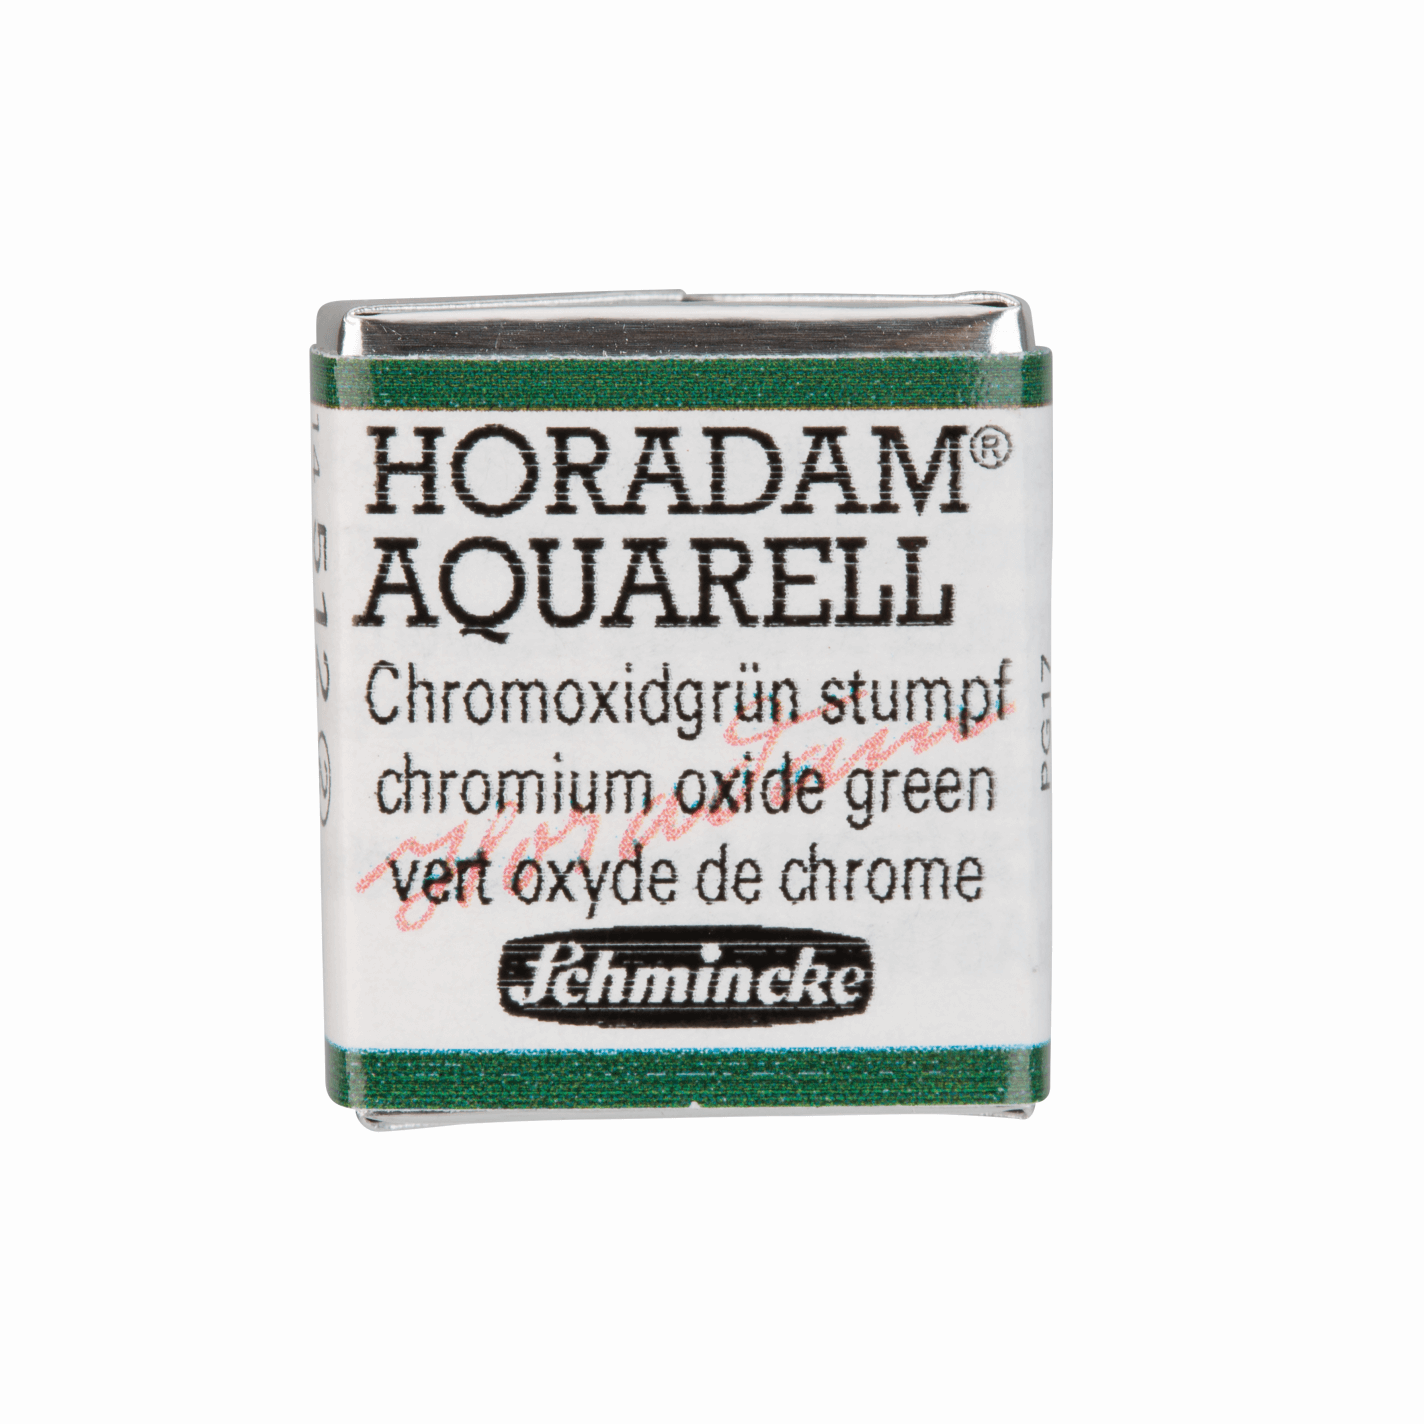 Schmincke Horadam Aquarell pans 1/2 pan Chromium Oxide Green